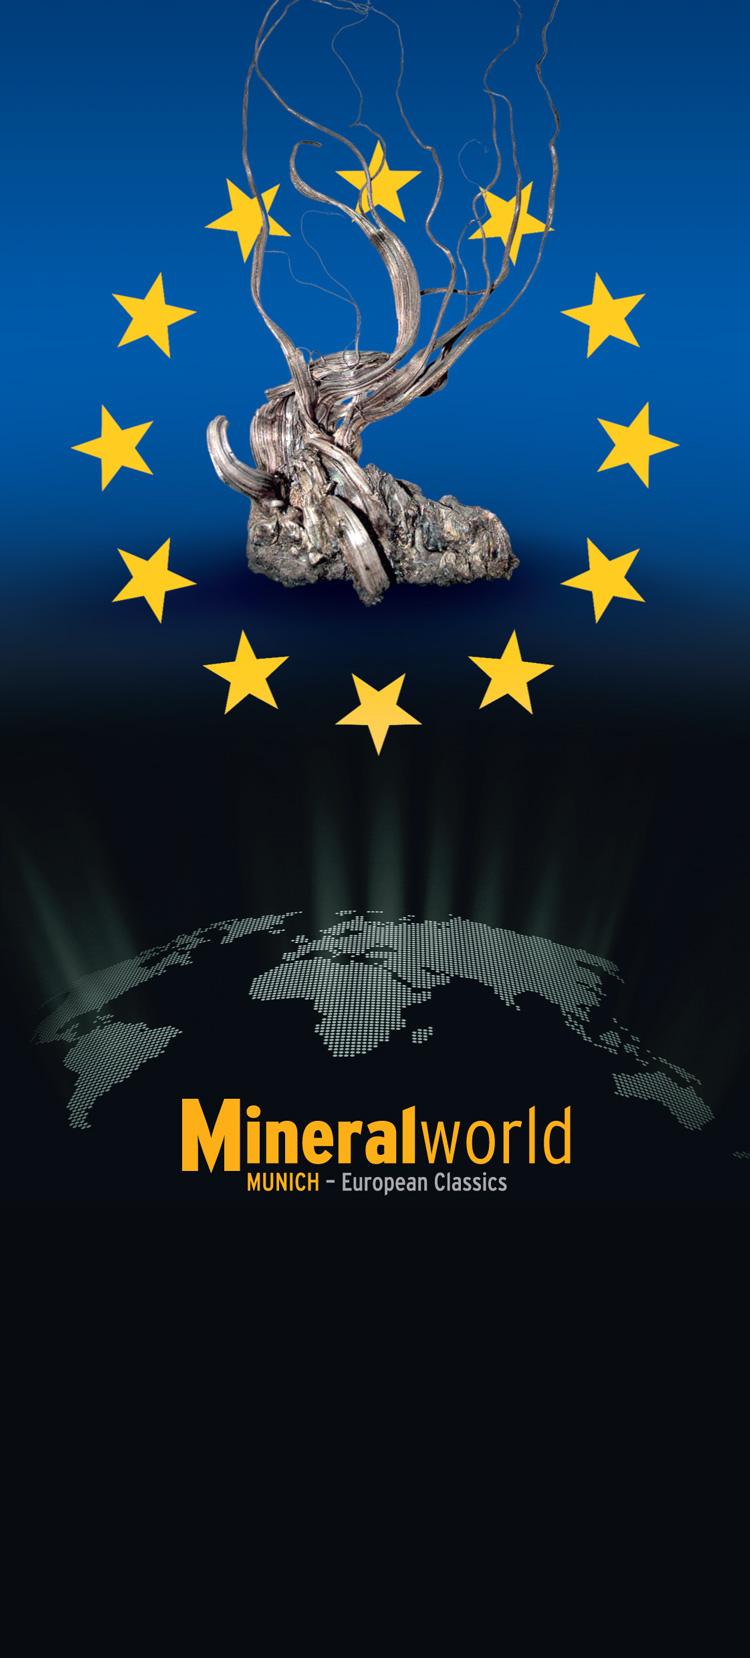 Mineralientage Munich 2011 - Mineralworld.jpg